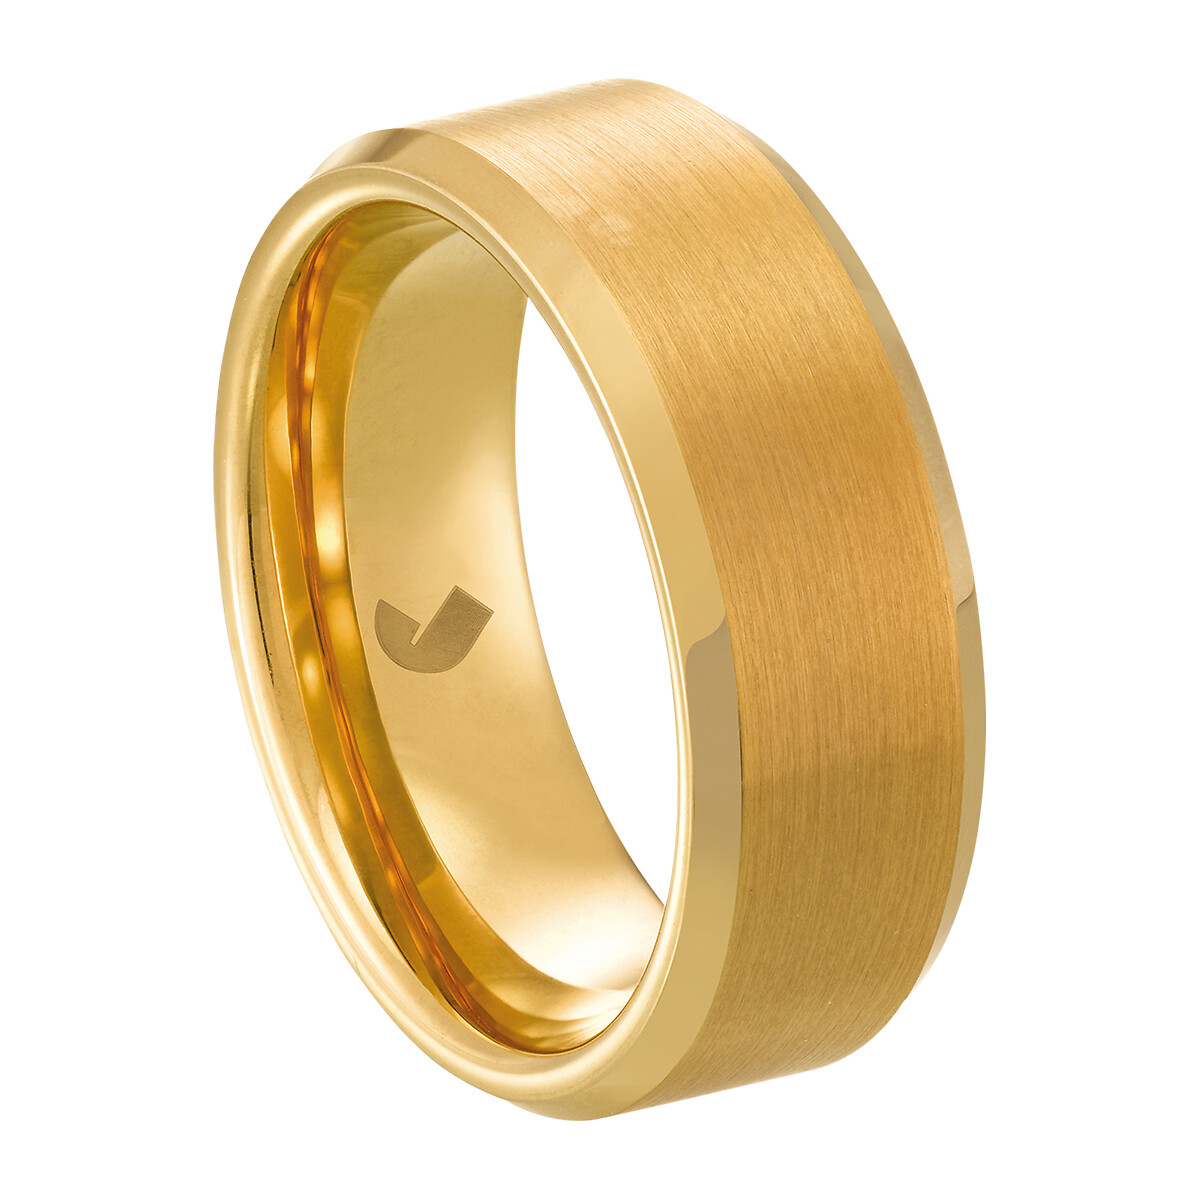 VIAUR : Goldener wolfram-ring von JOURDAN BIJOUX